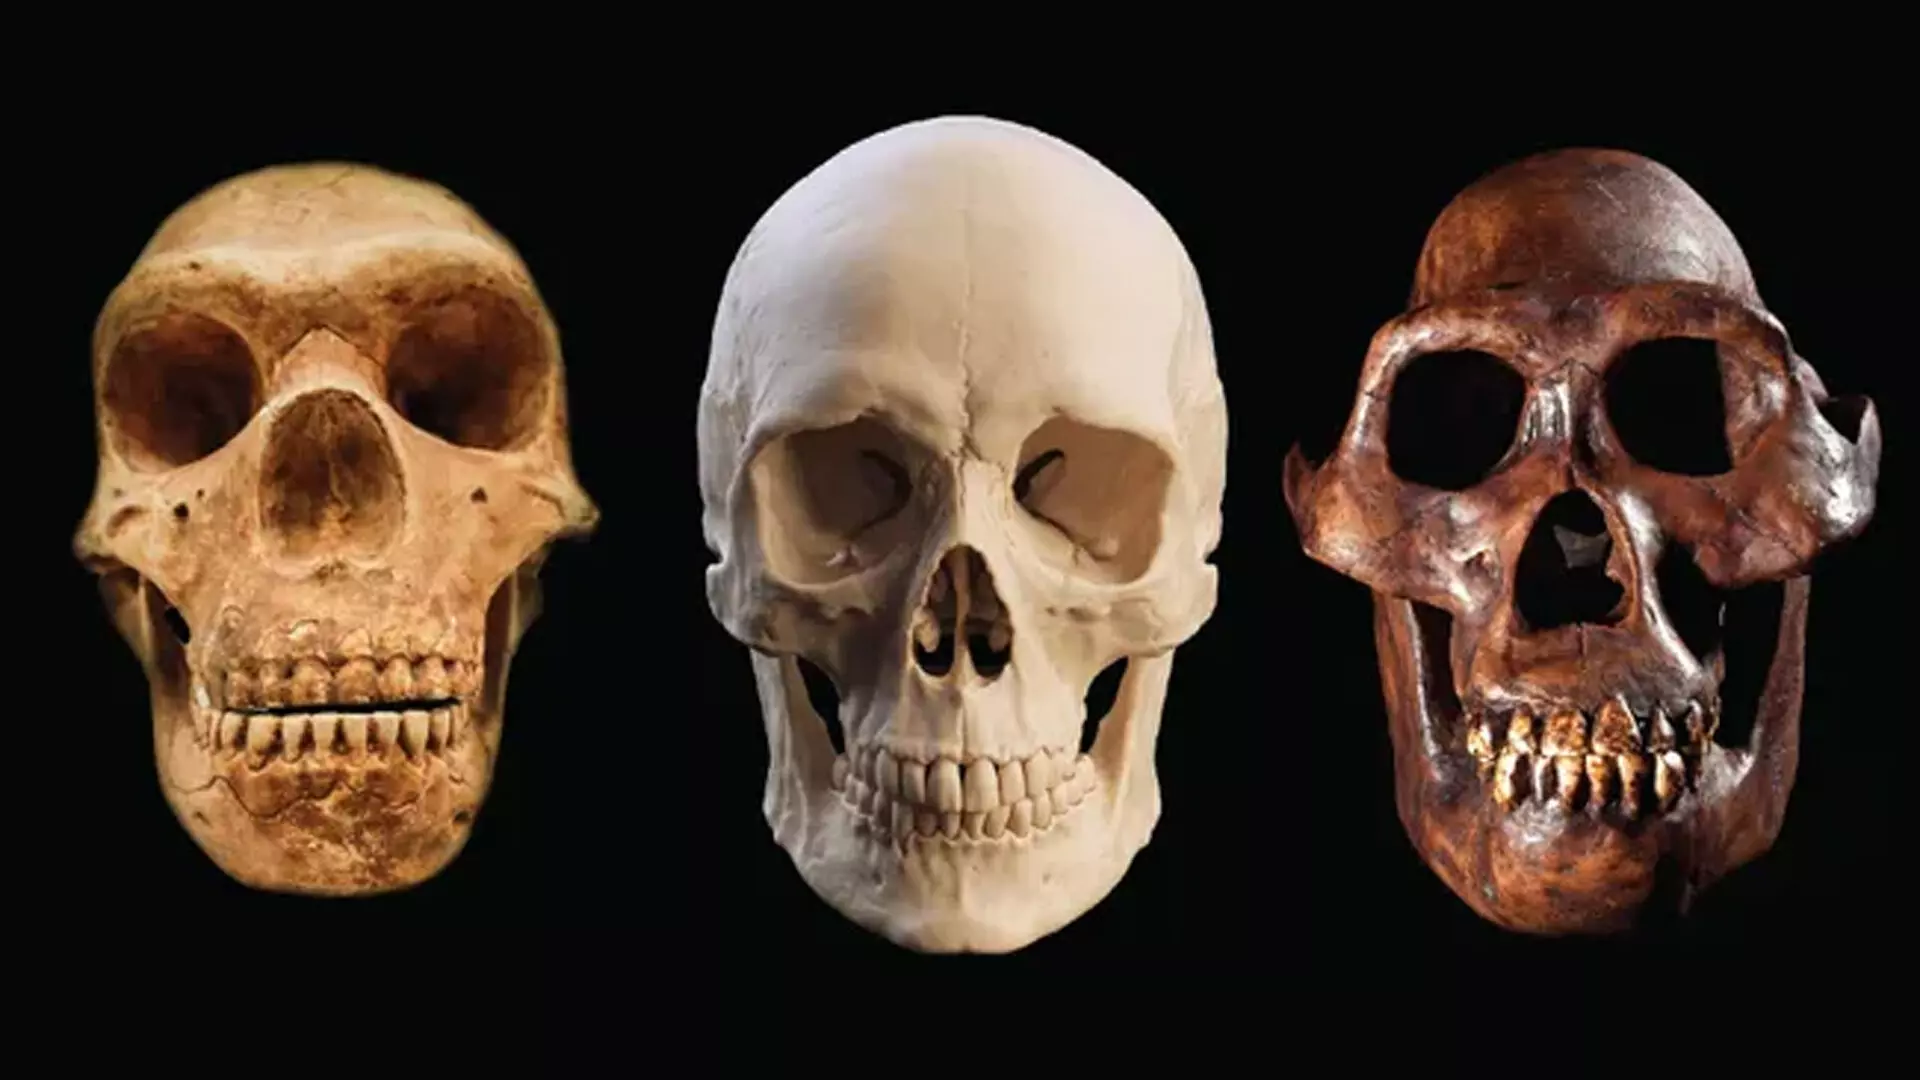 Homo sapiens अन्य सभी मानव प्रजातियों से अधिक समय तक जीवित क्यों रहे?